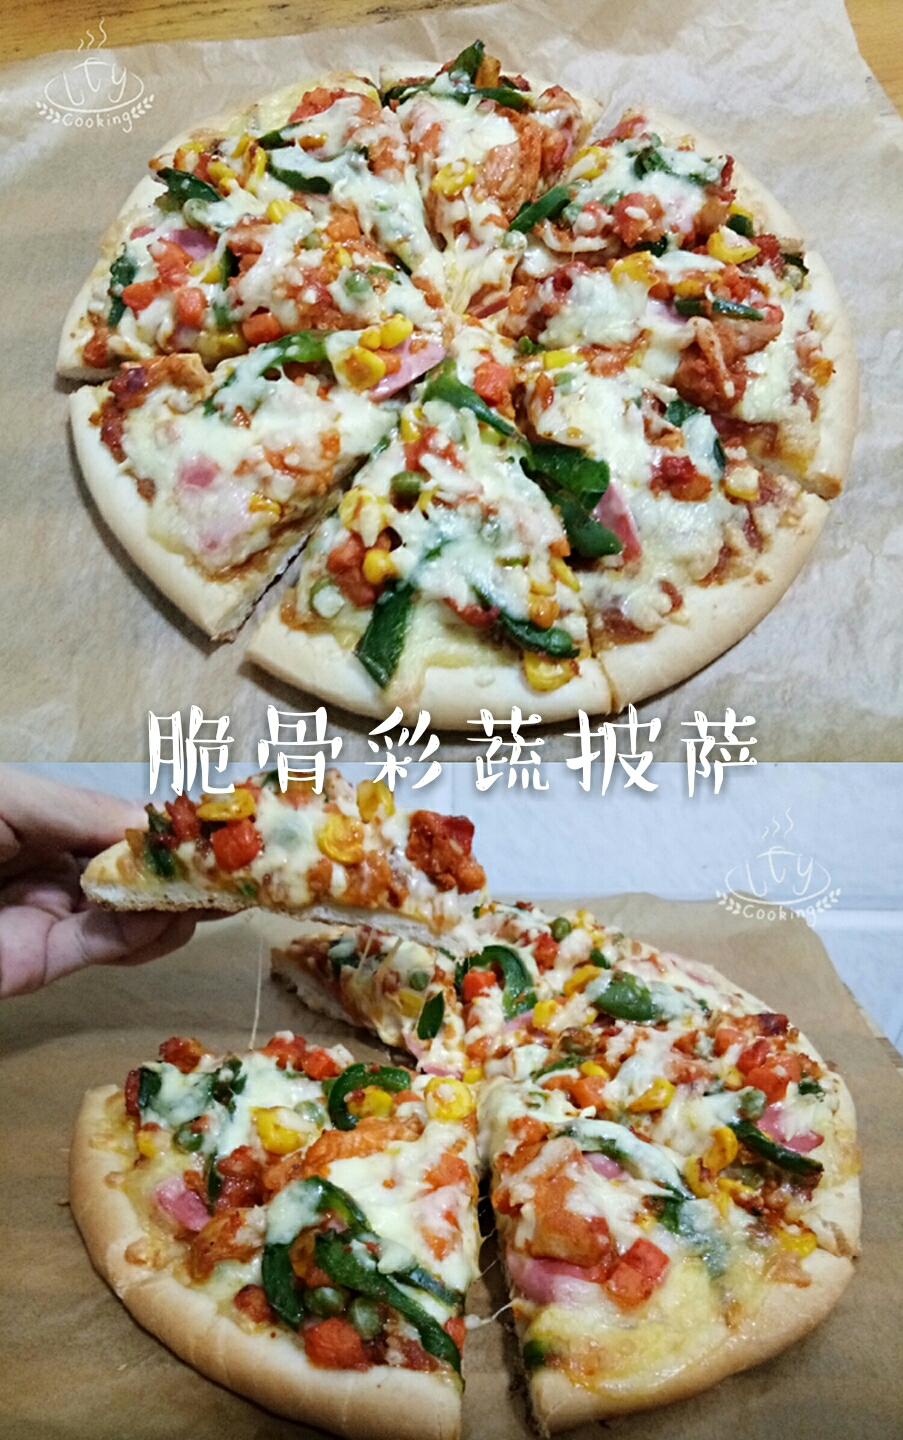 脆骨彩蔬披萨的做法